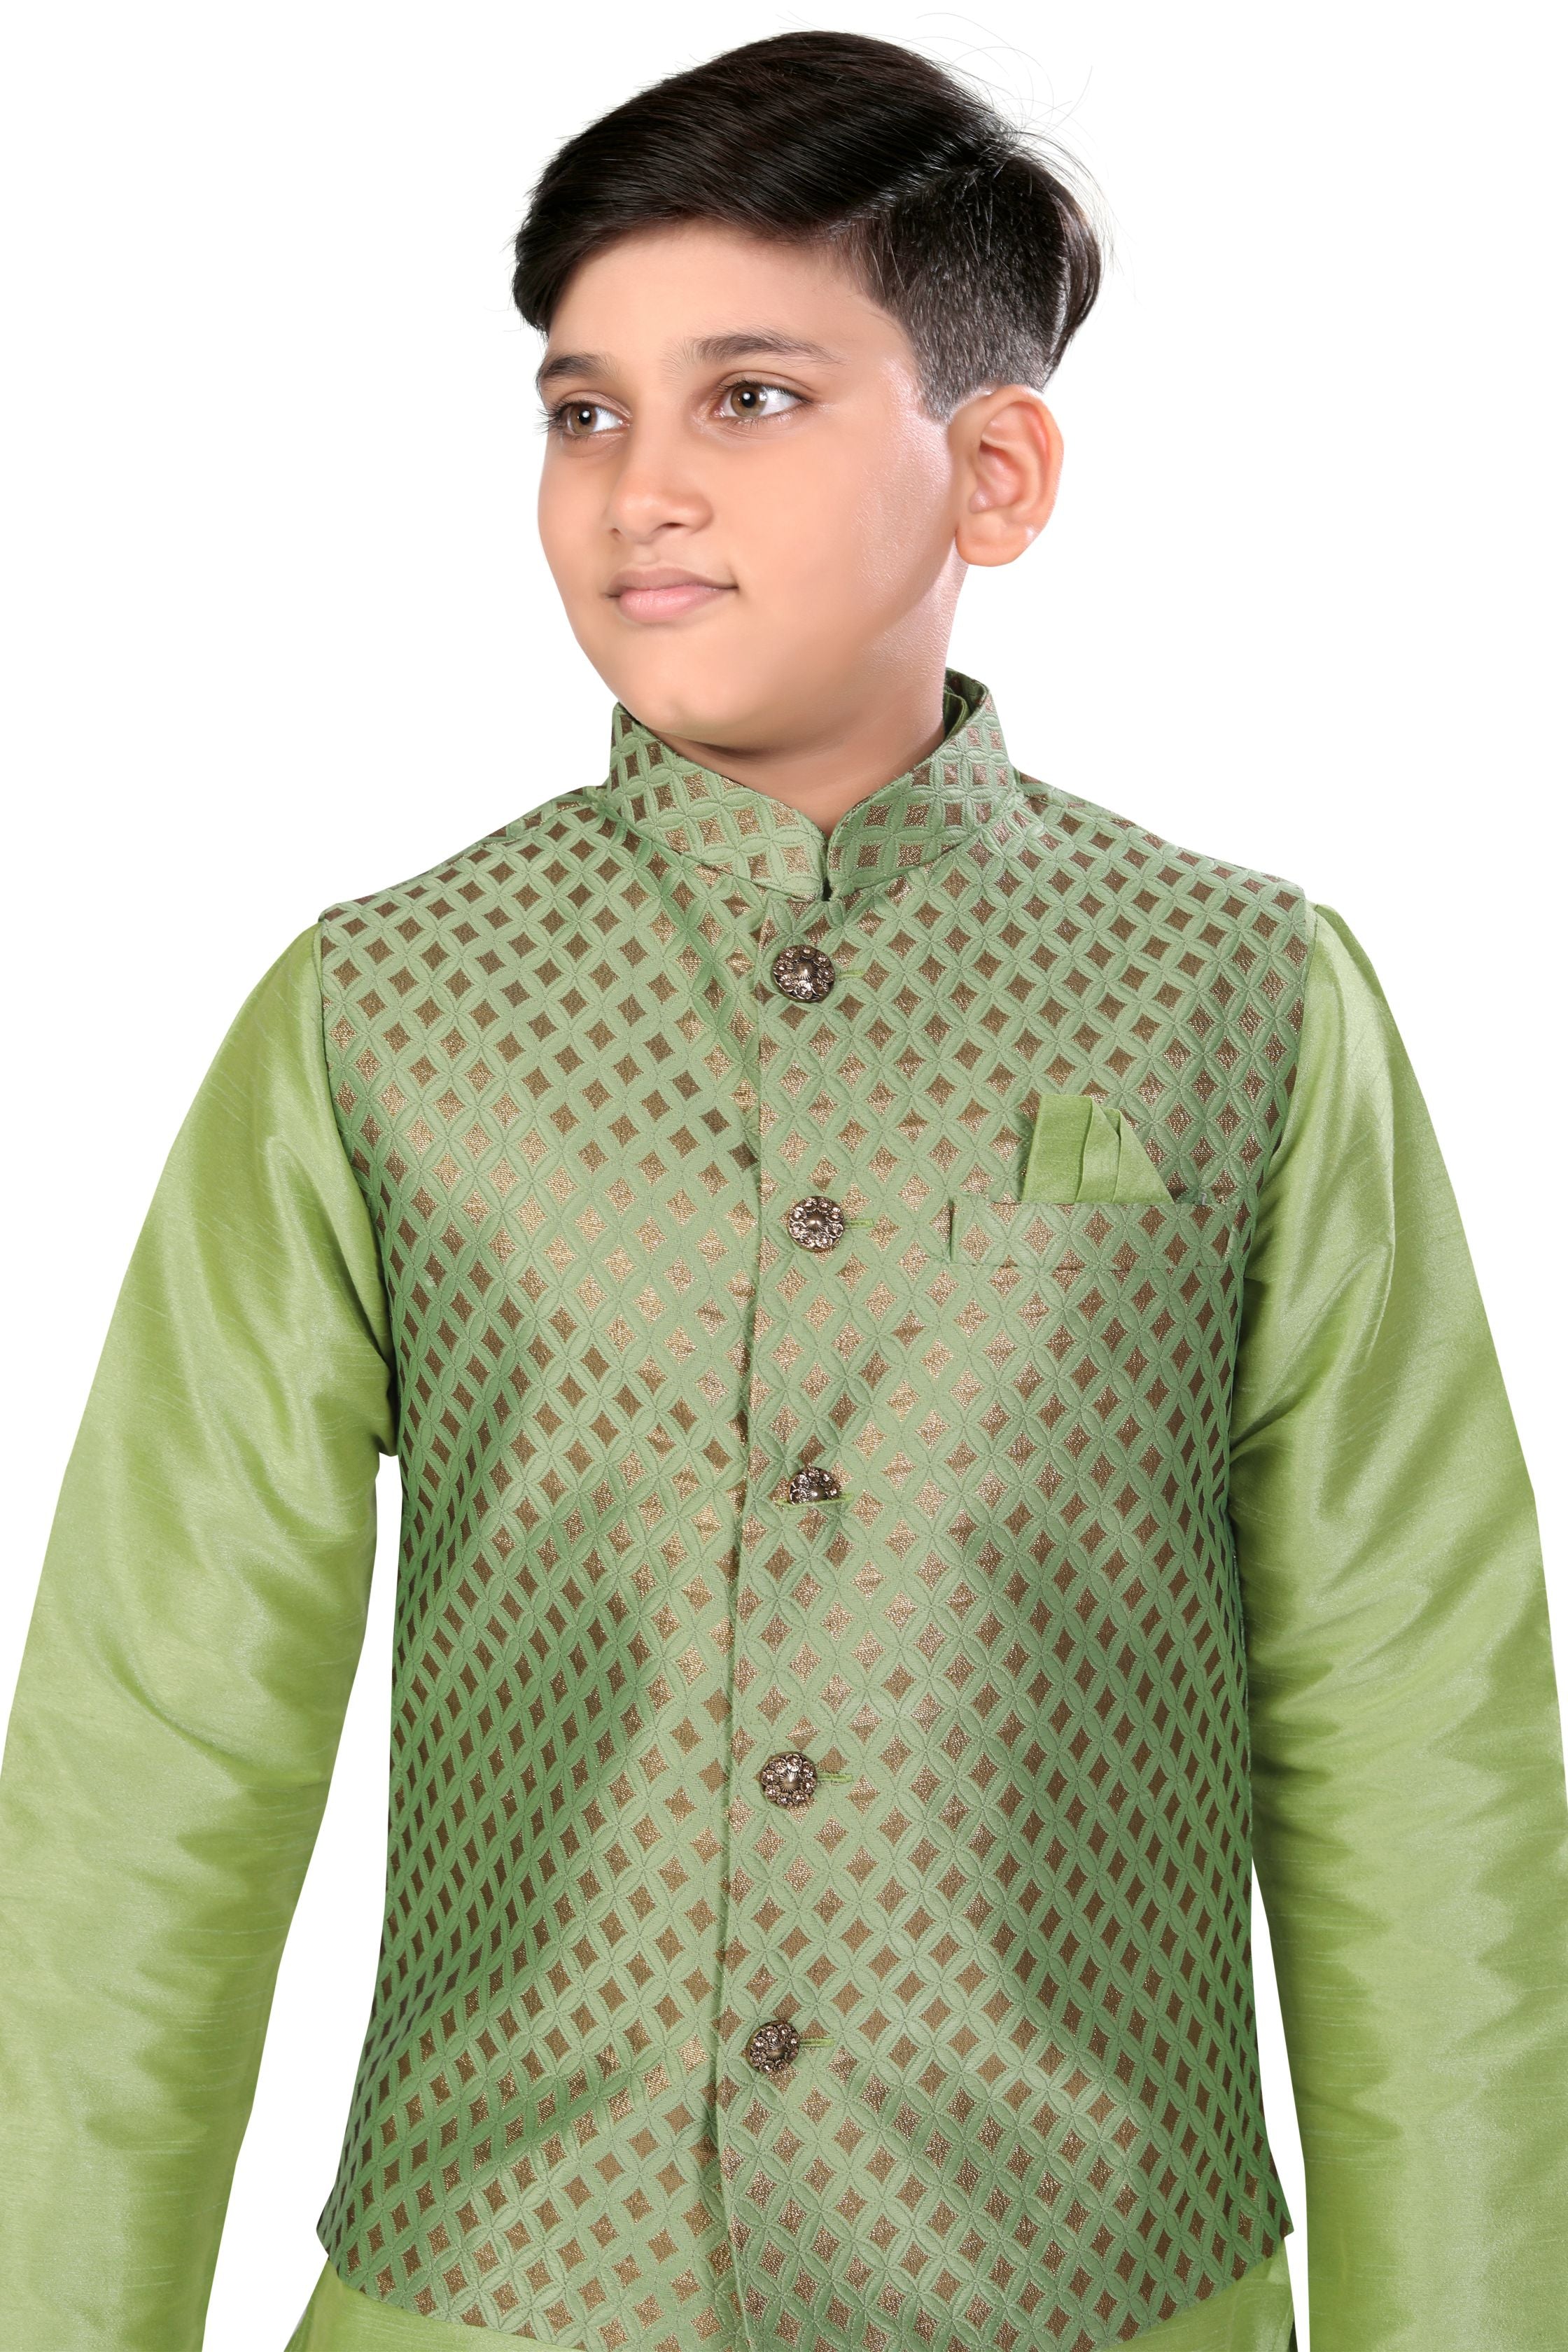 Boys Banarasi Brocade Vest Coat Set in Mint Green Colour